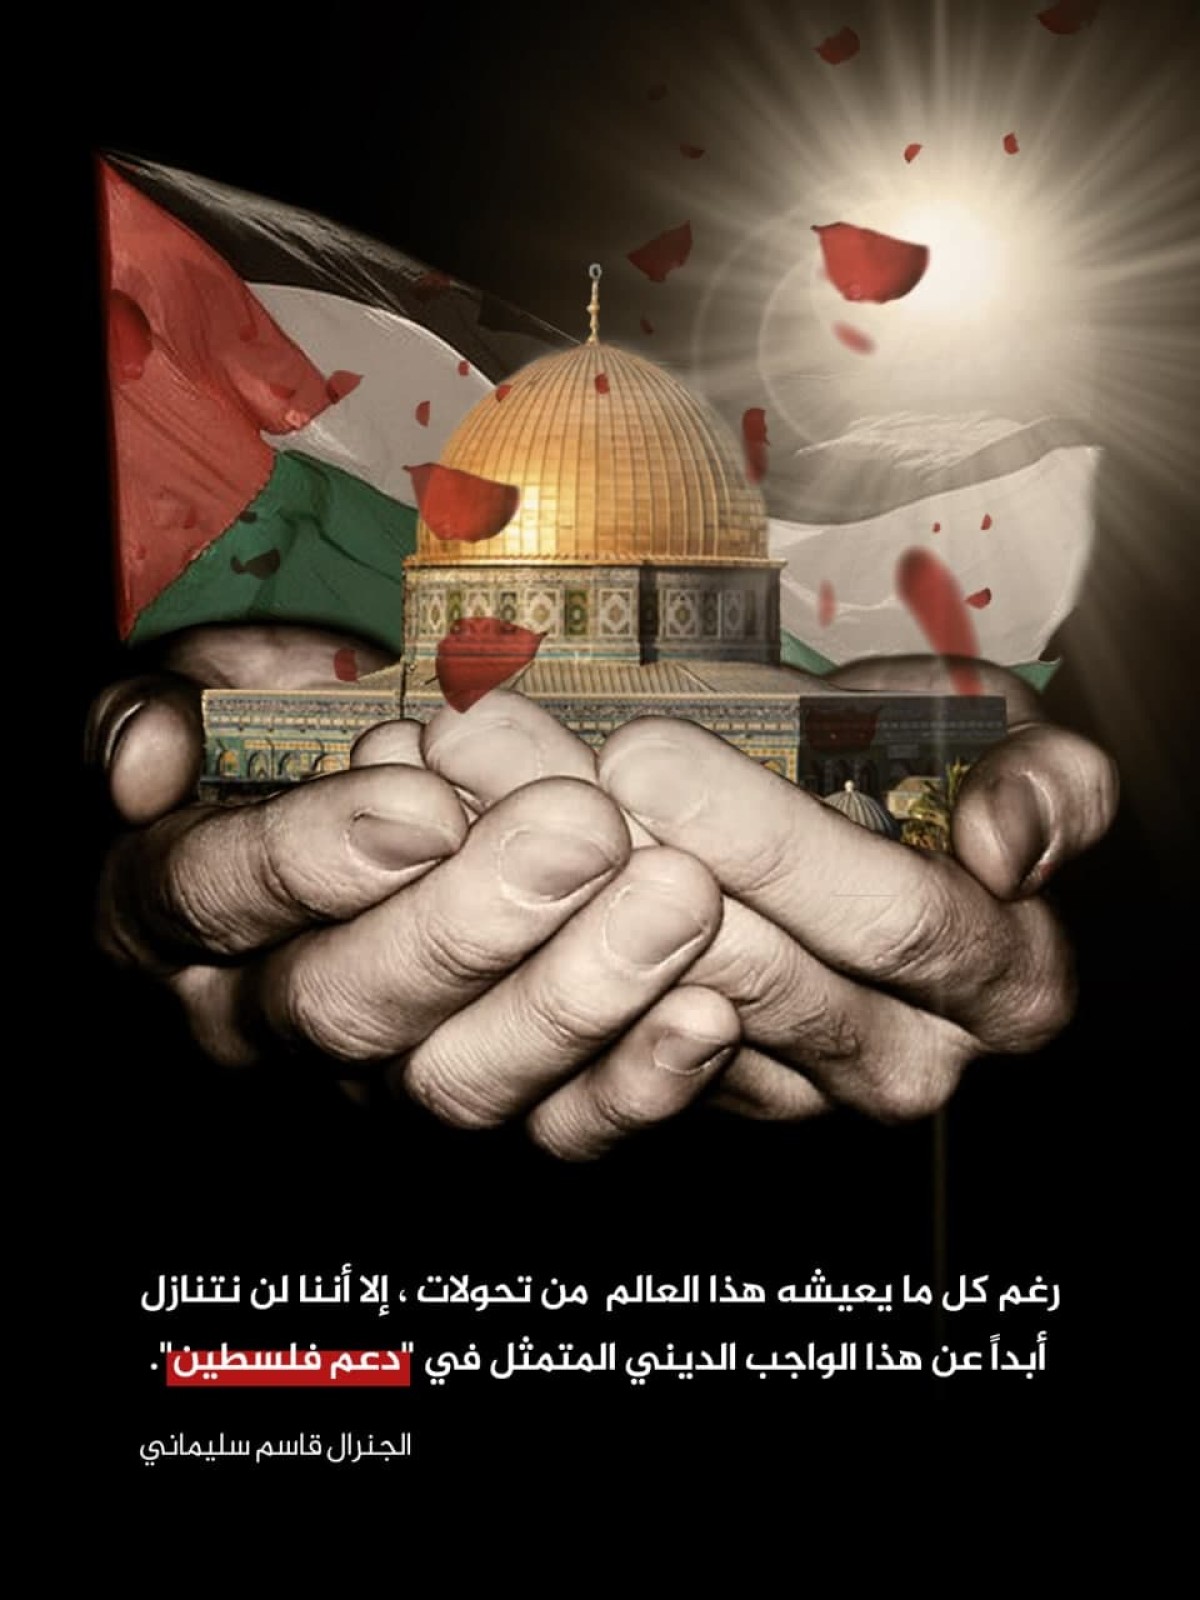 ? ” دعم فلسطين “